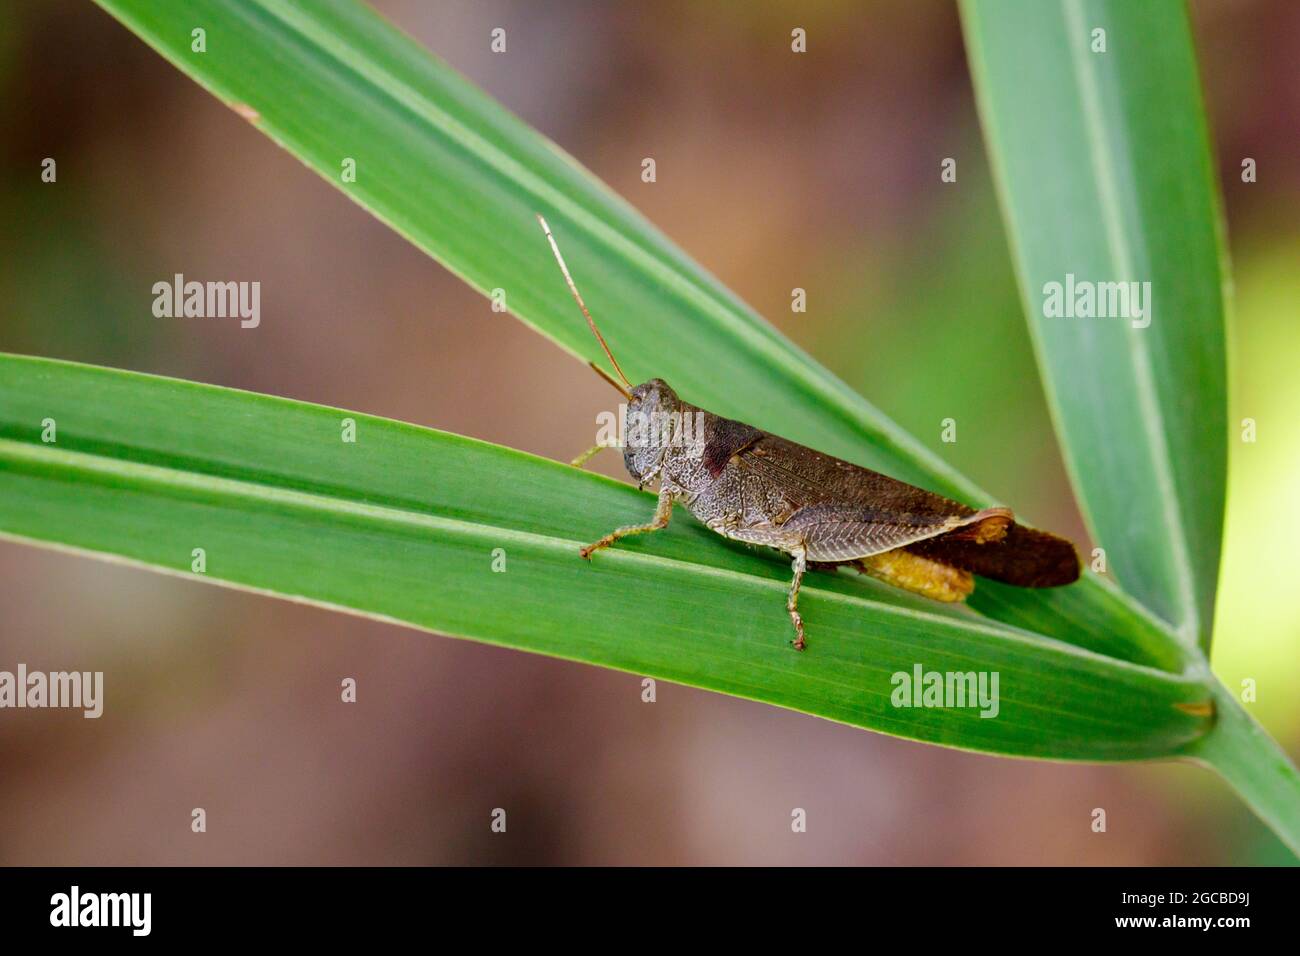 Image de sauterelles brunes à cornes courtes (Acrididae) sur les feuilles vertes. Insecte. Animal. Banque D'Images